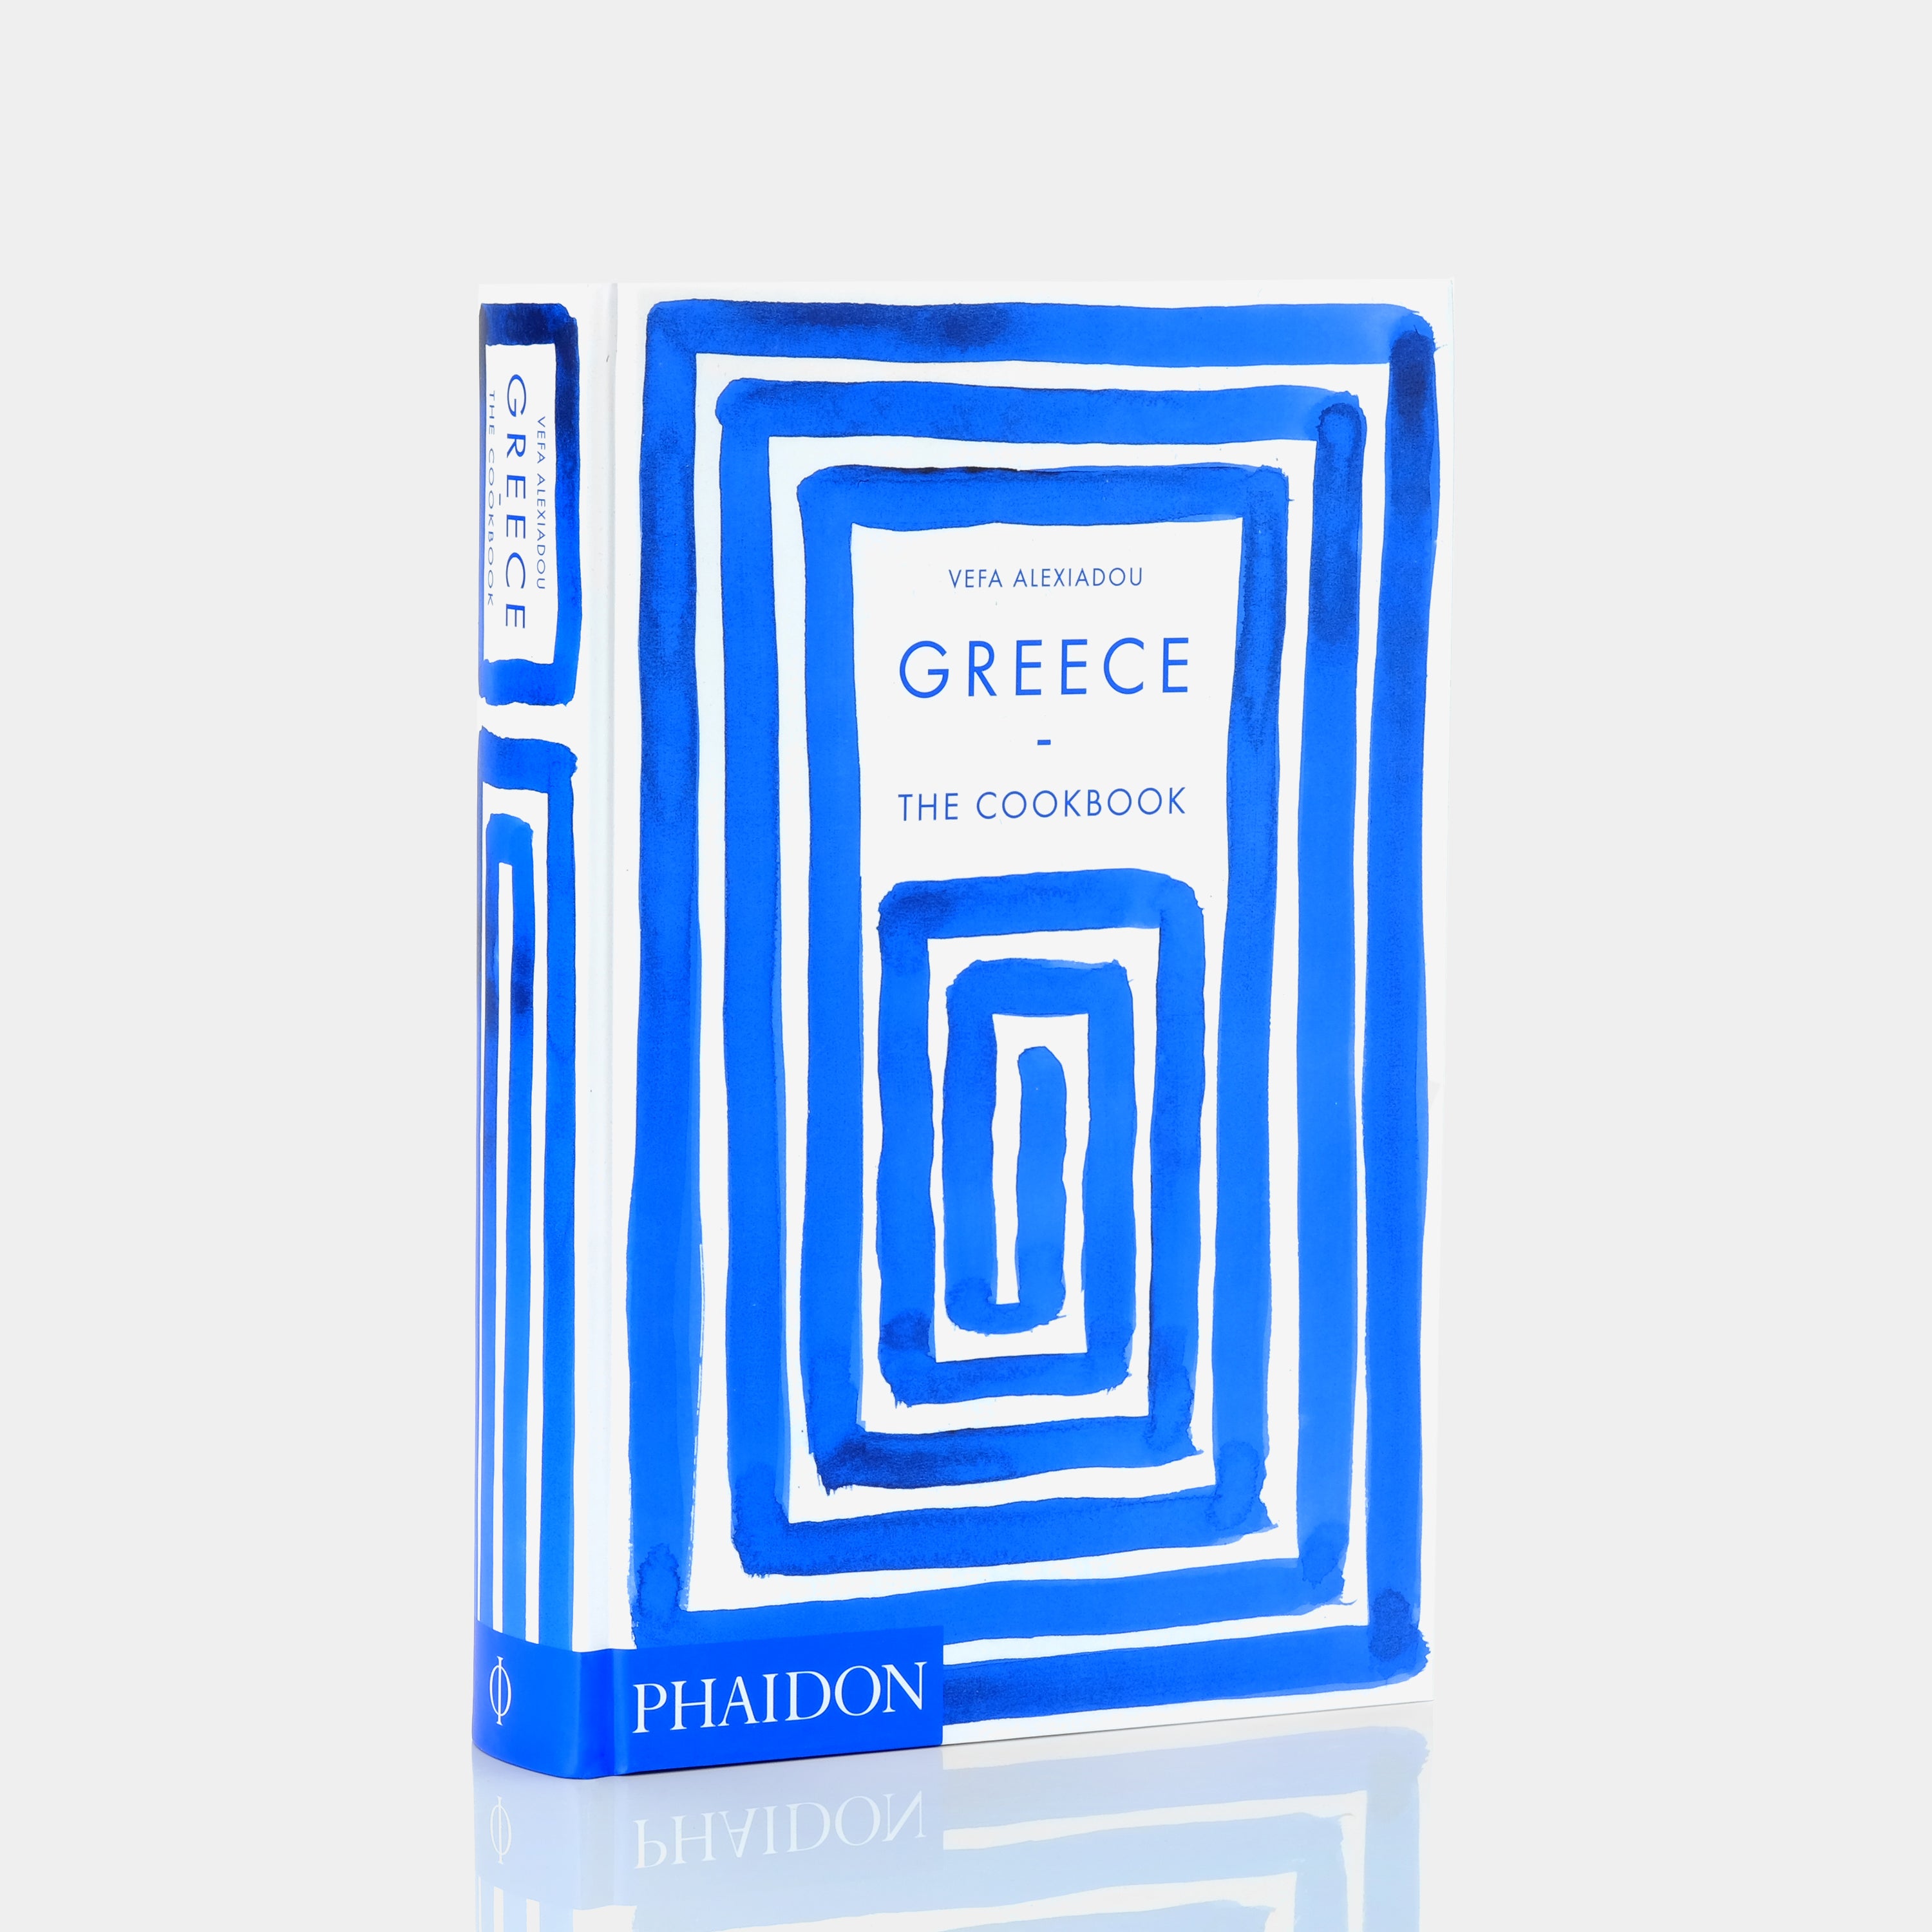 Greece: The Cookbook by Vefa Alexiadou Phaidon Book